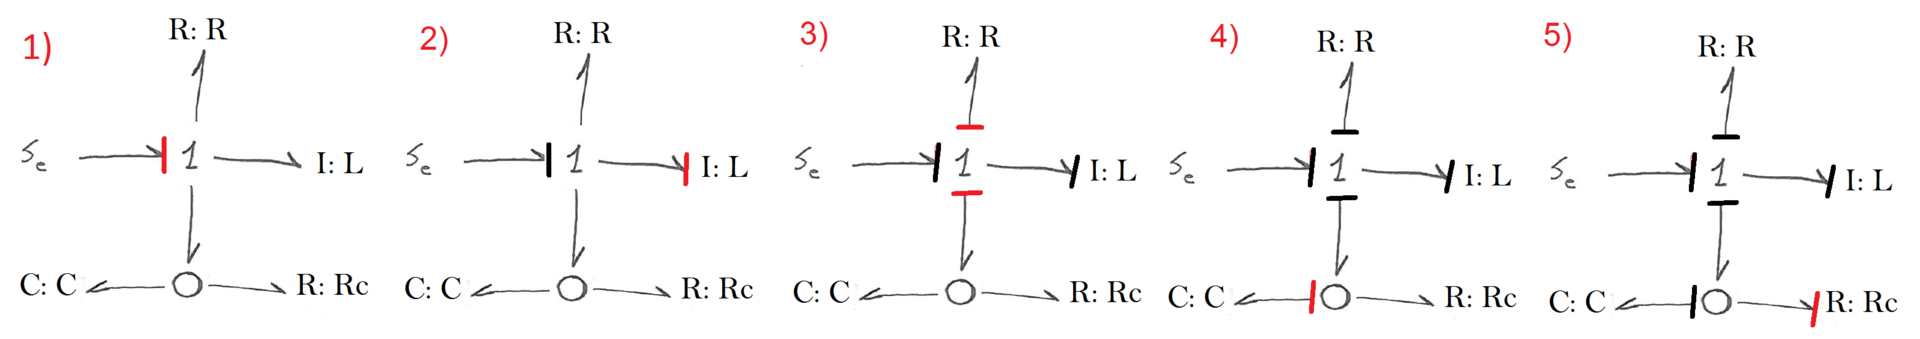 Моделирование динамических систем (метод Лагранжа и Bond graph approach) - 61